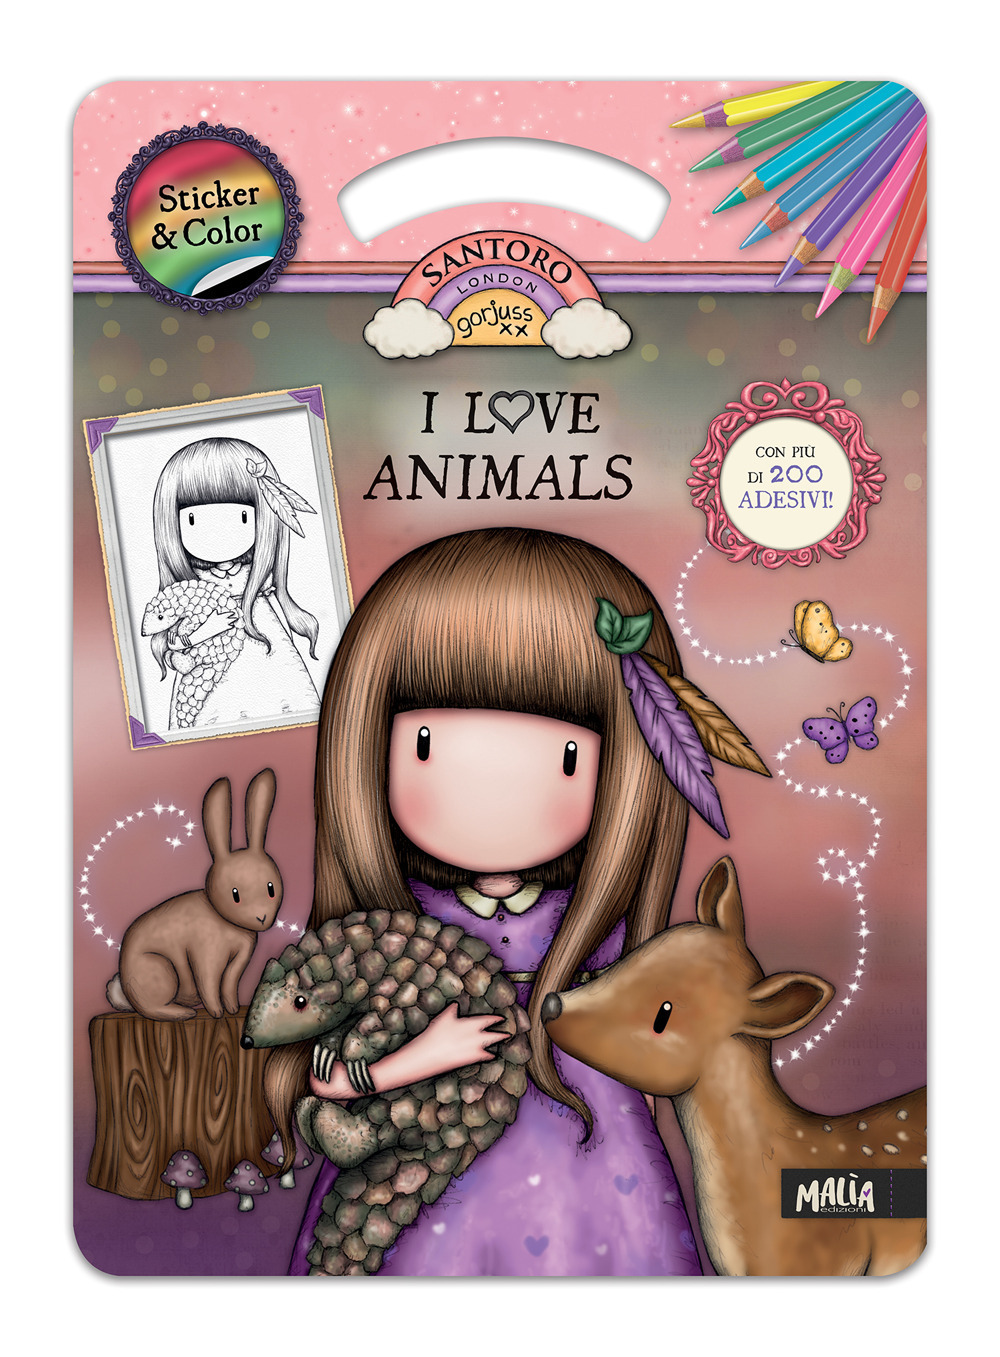 Copertina libro I love animals Sticker & Color